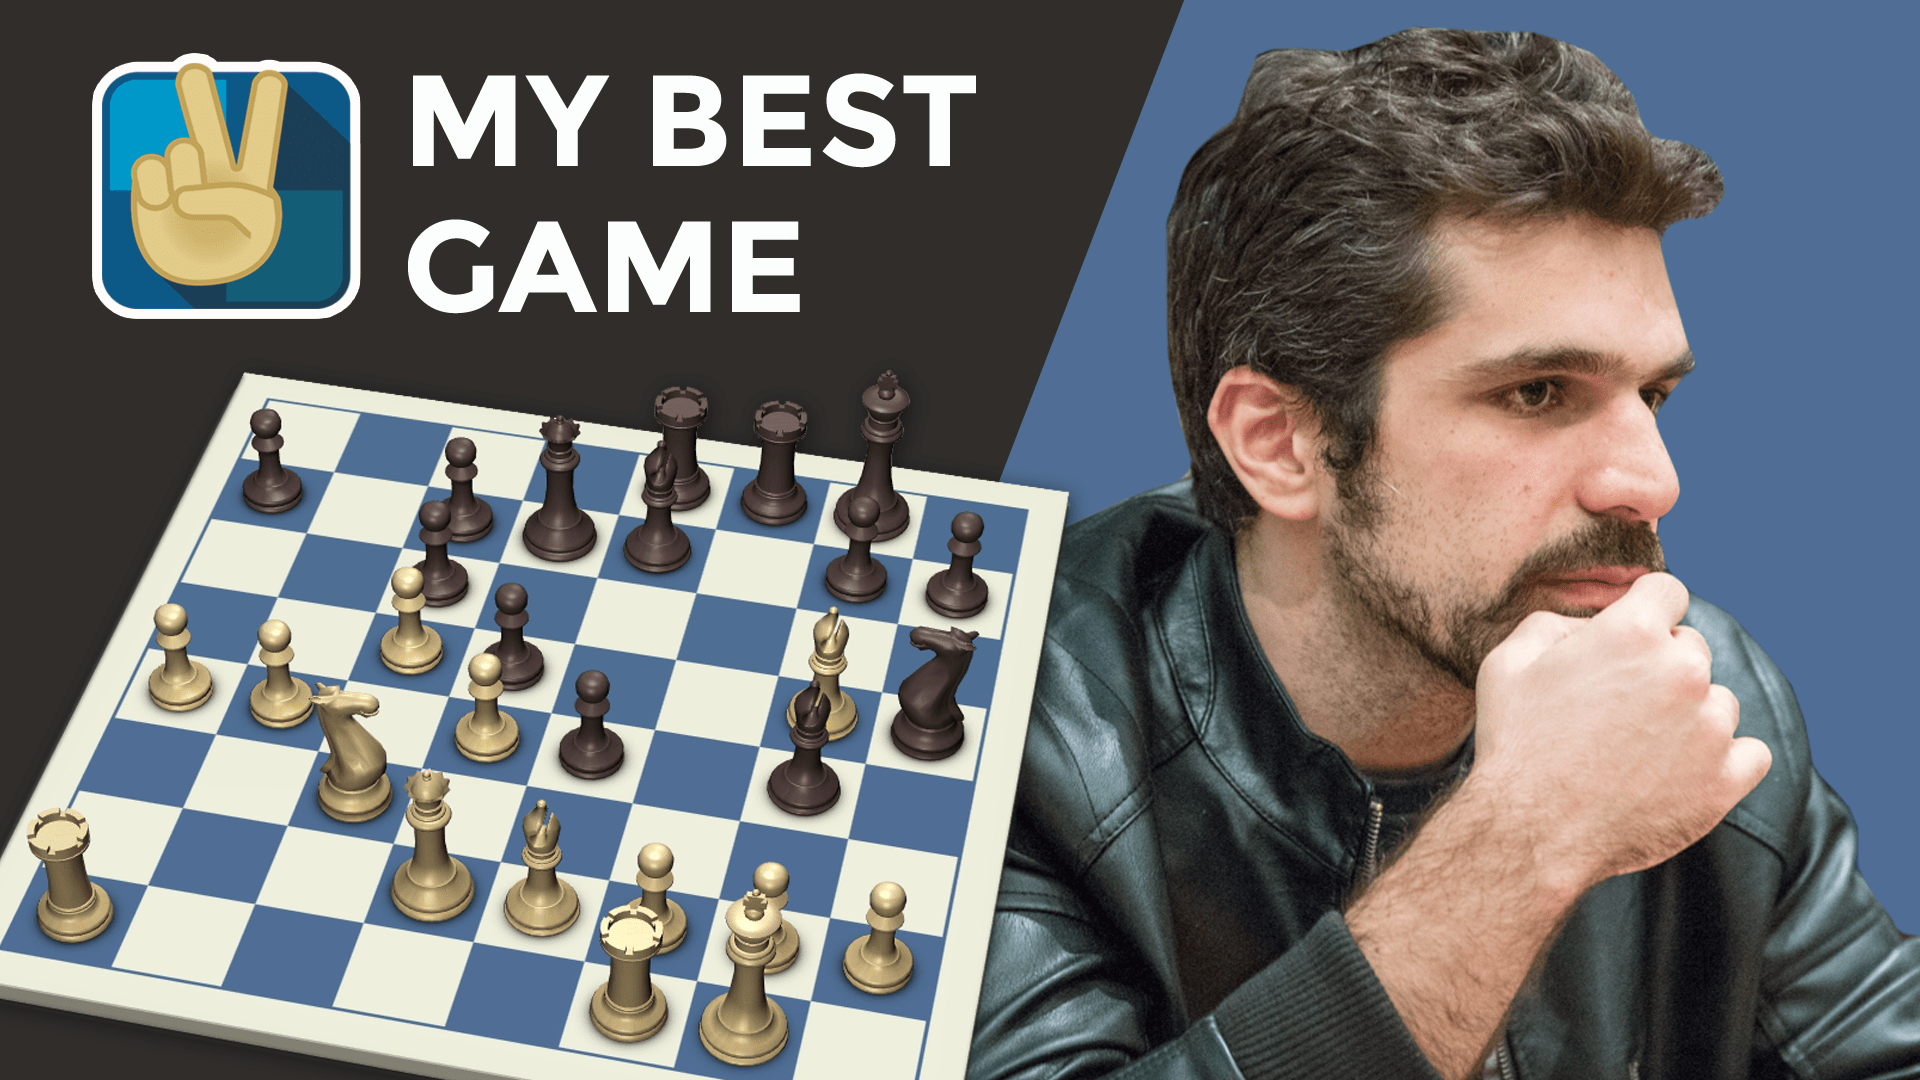 The chess games of Krikor Sevag Mekhitarian